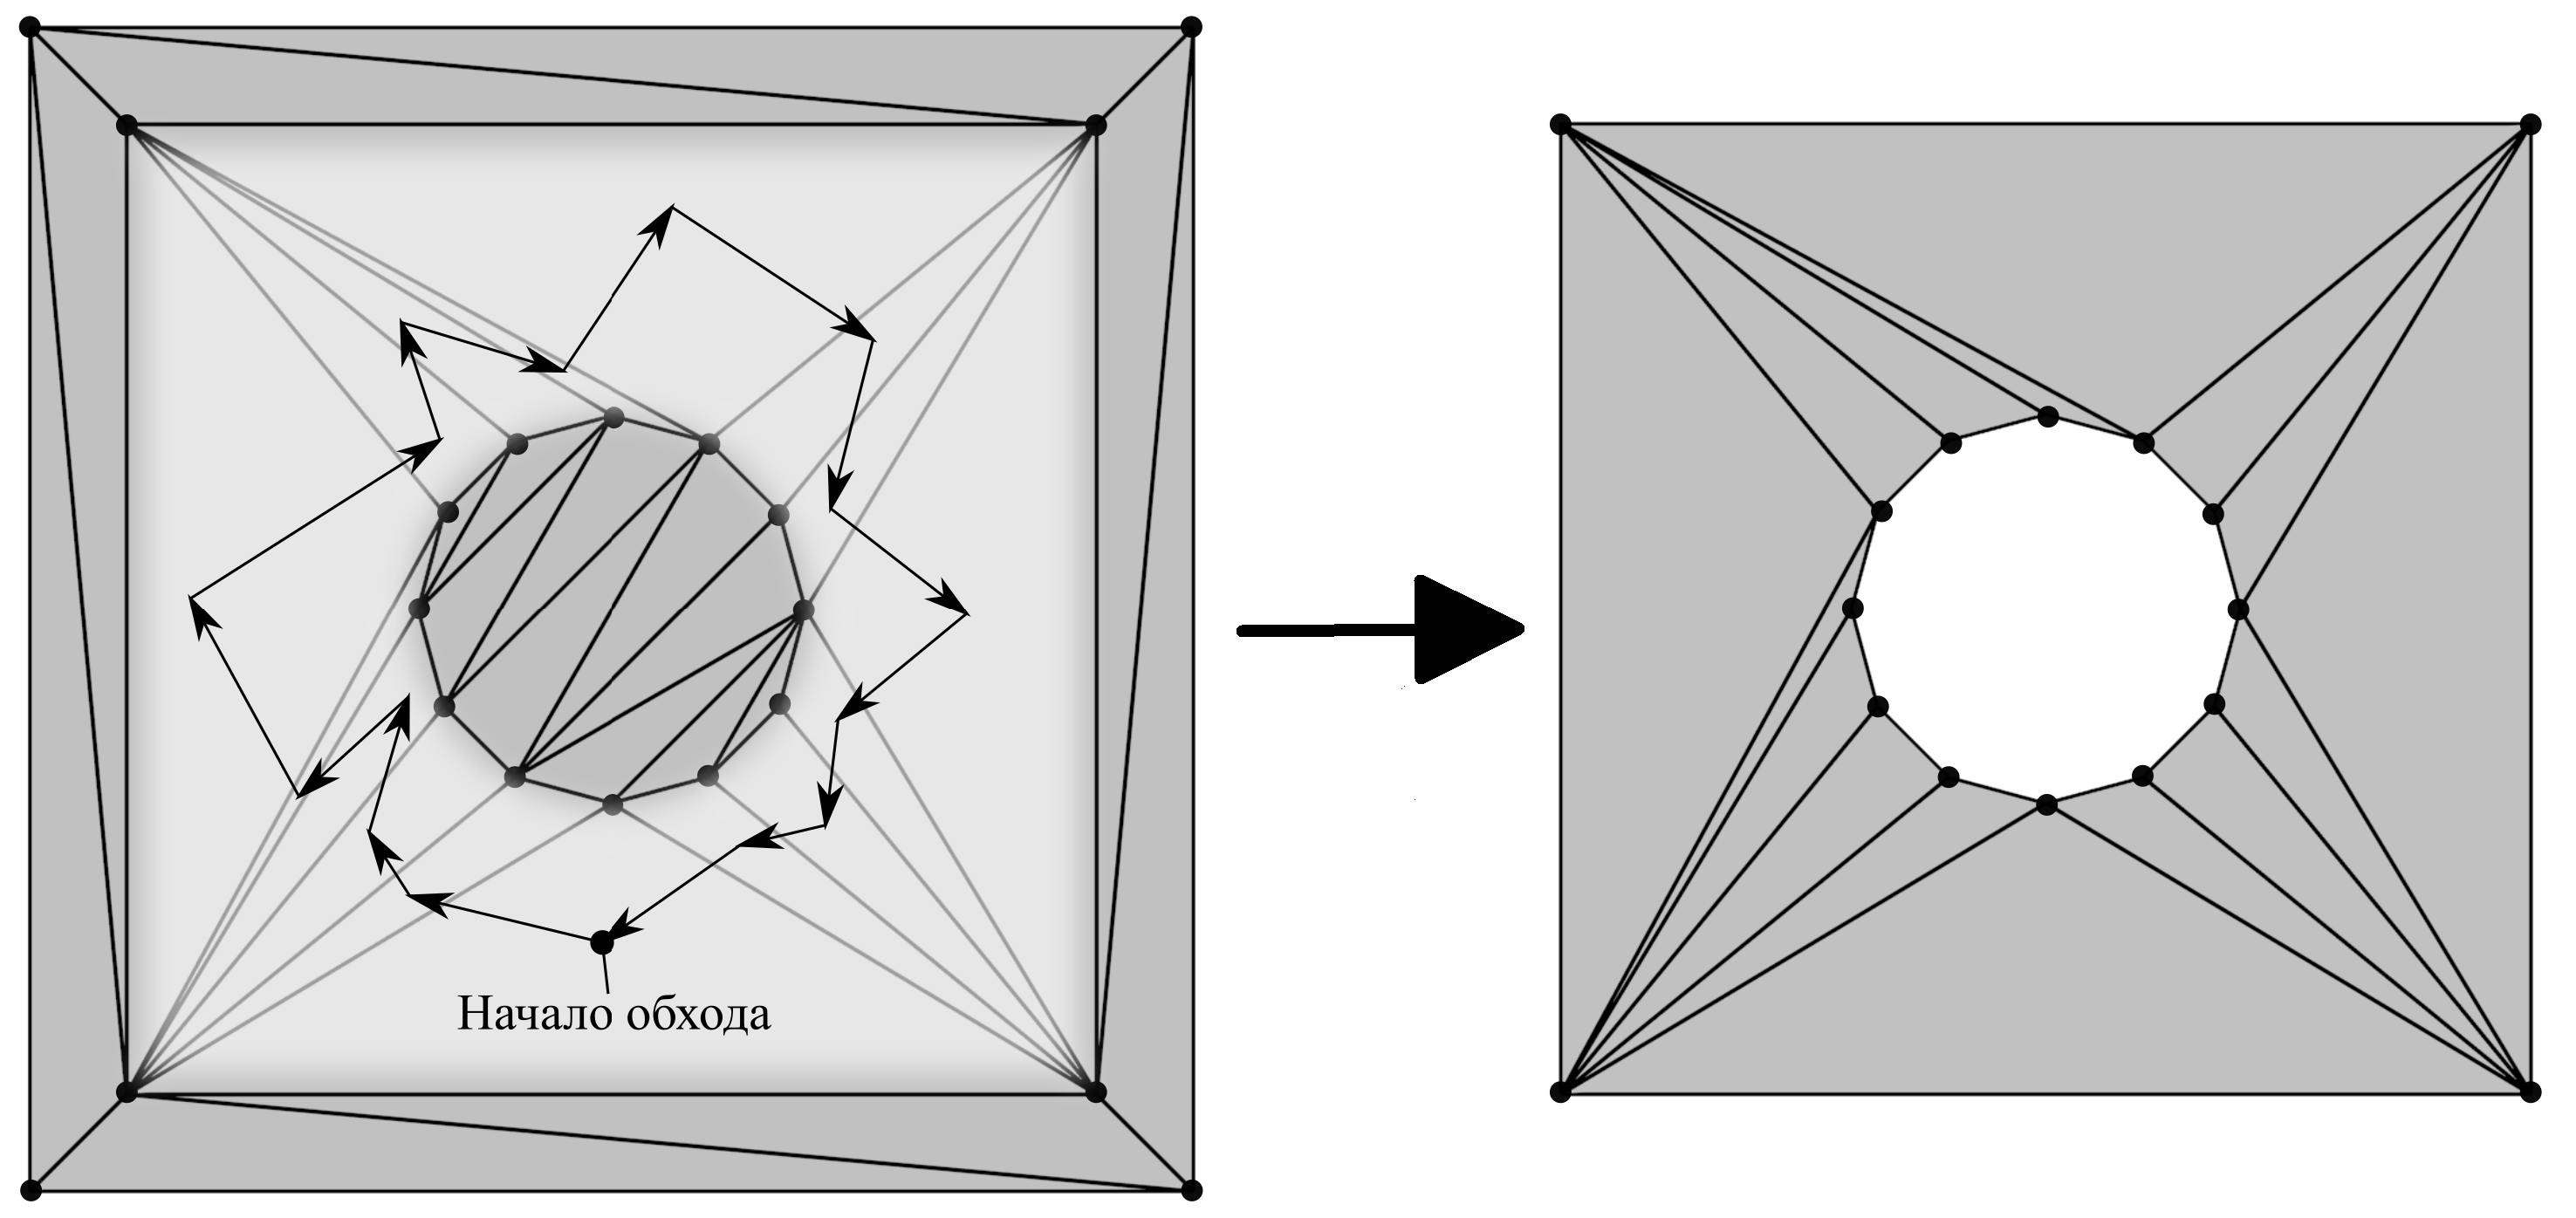 Итоговая триангуляция полигона